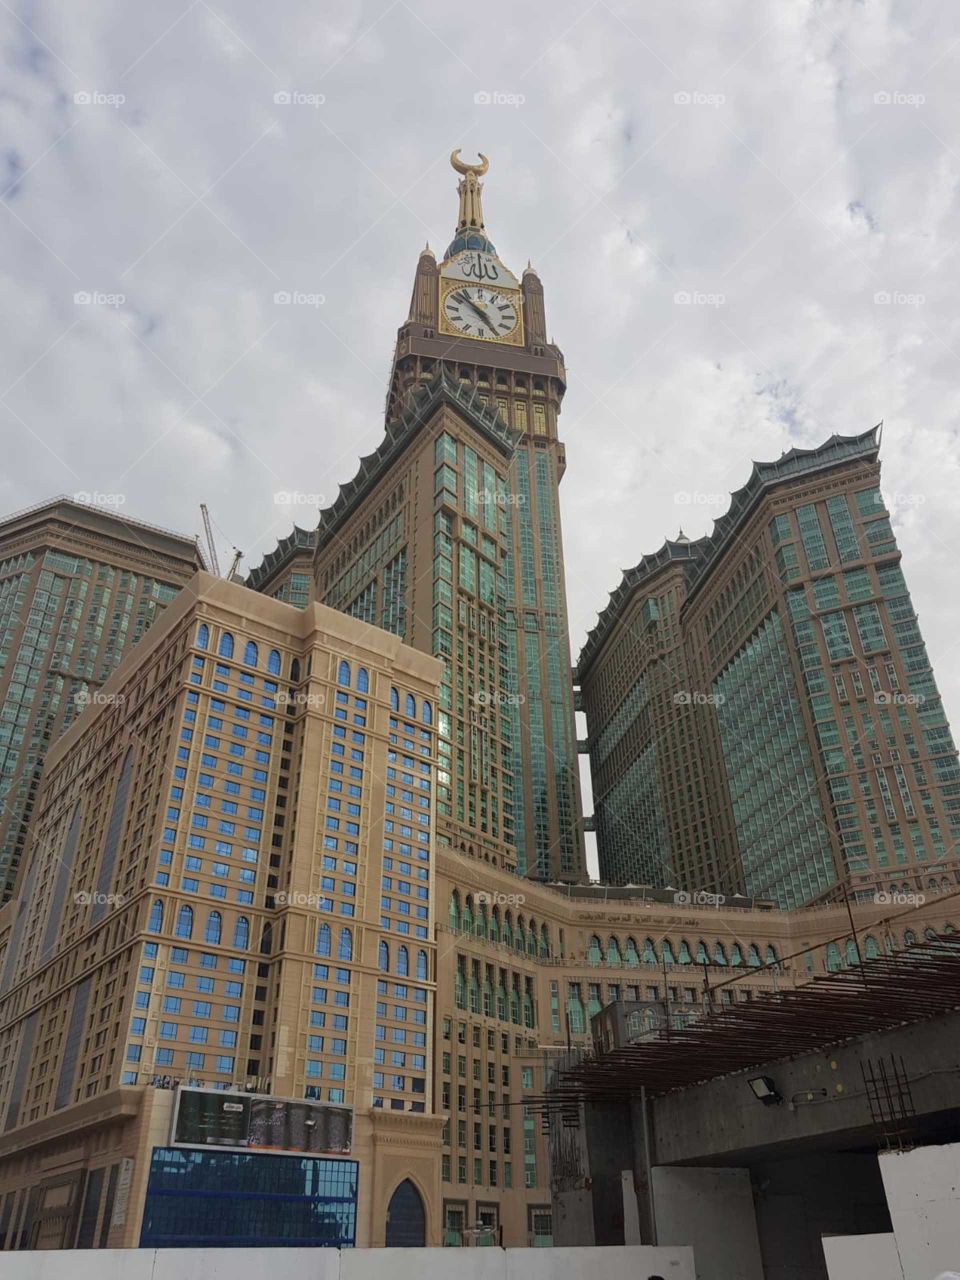 makkah tower, clock tower, modernisation